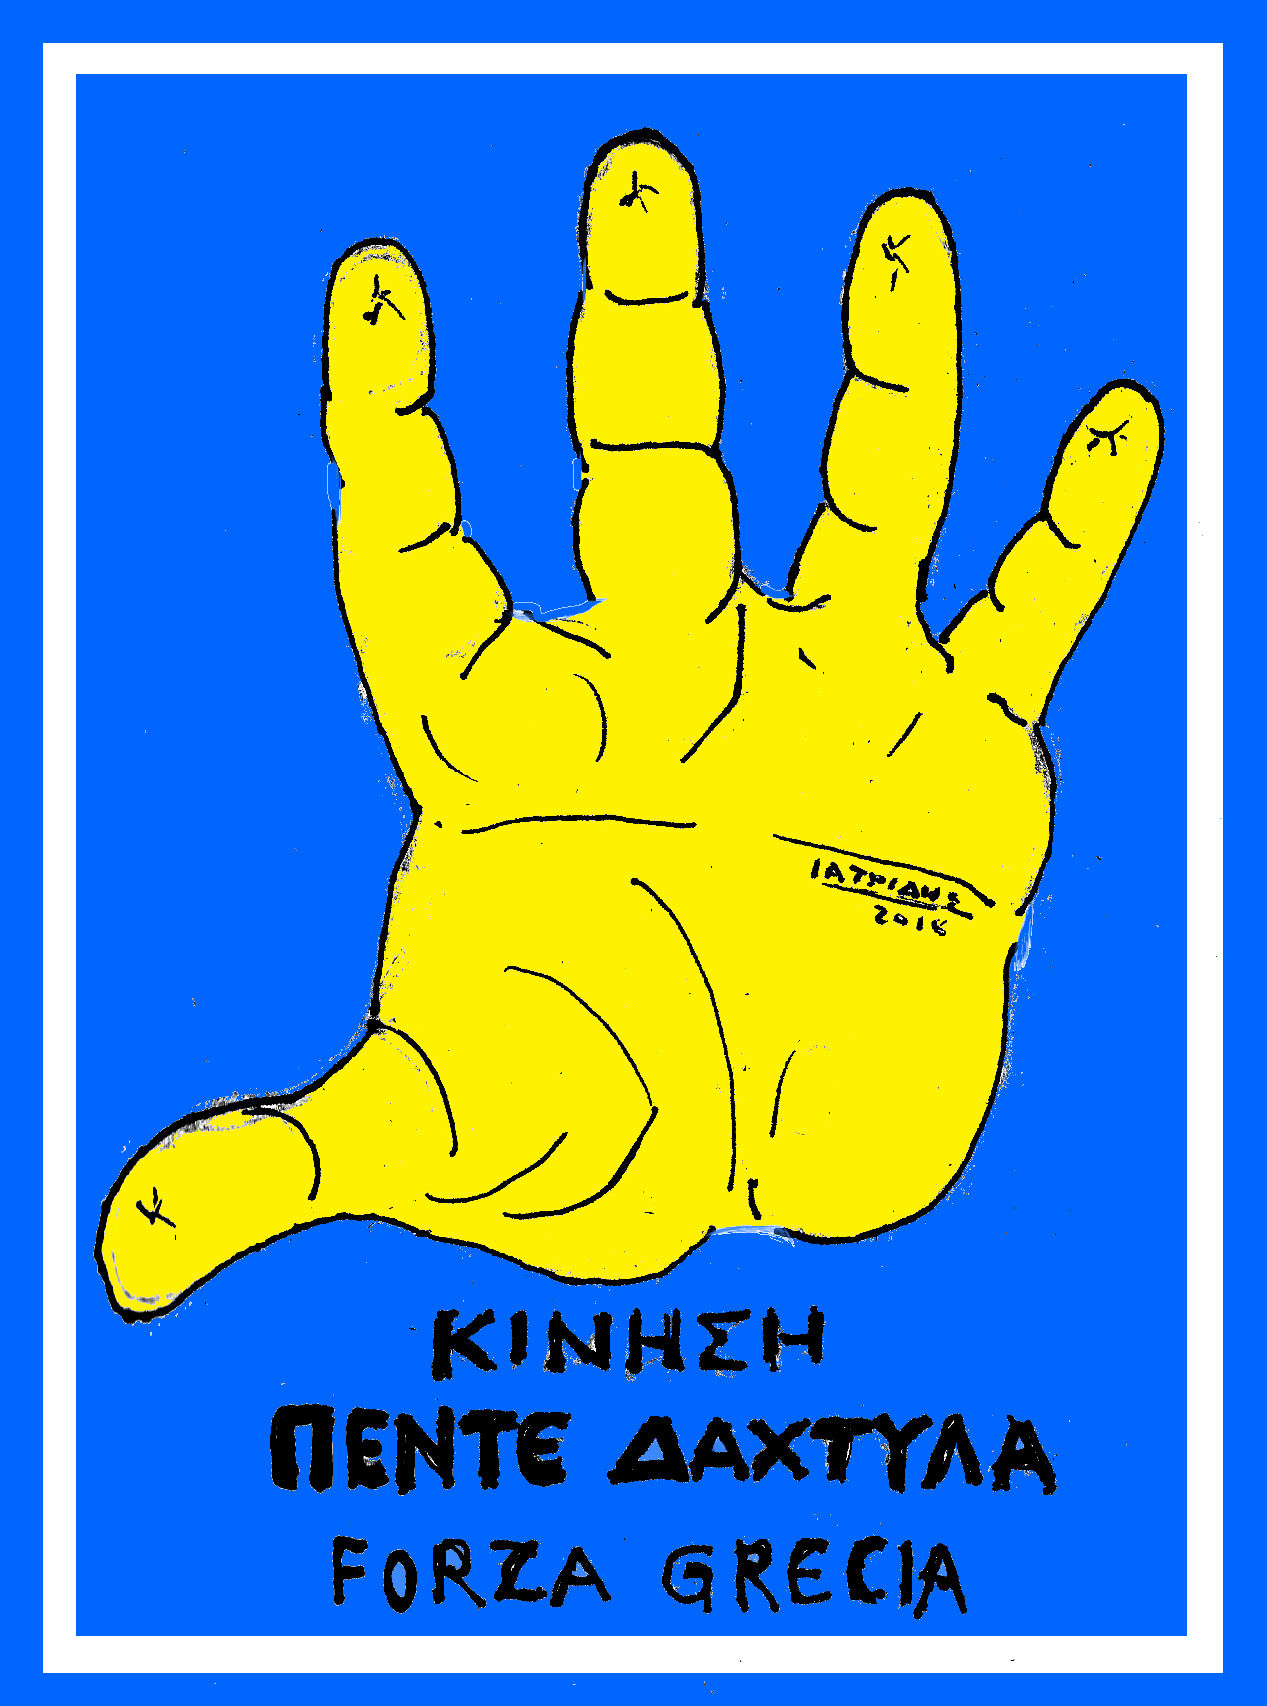 Κίνηση πέντε δάχτυλα είναι το θέμα της γελοιογραφίας του IaTriDis μετά και τις εκλογές στην Ιταλία.